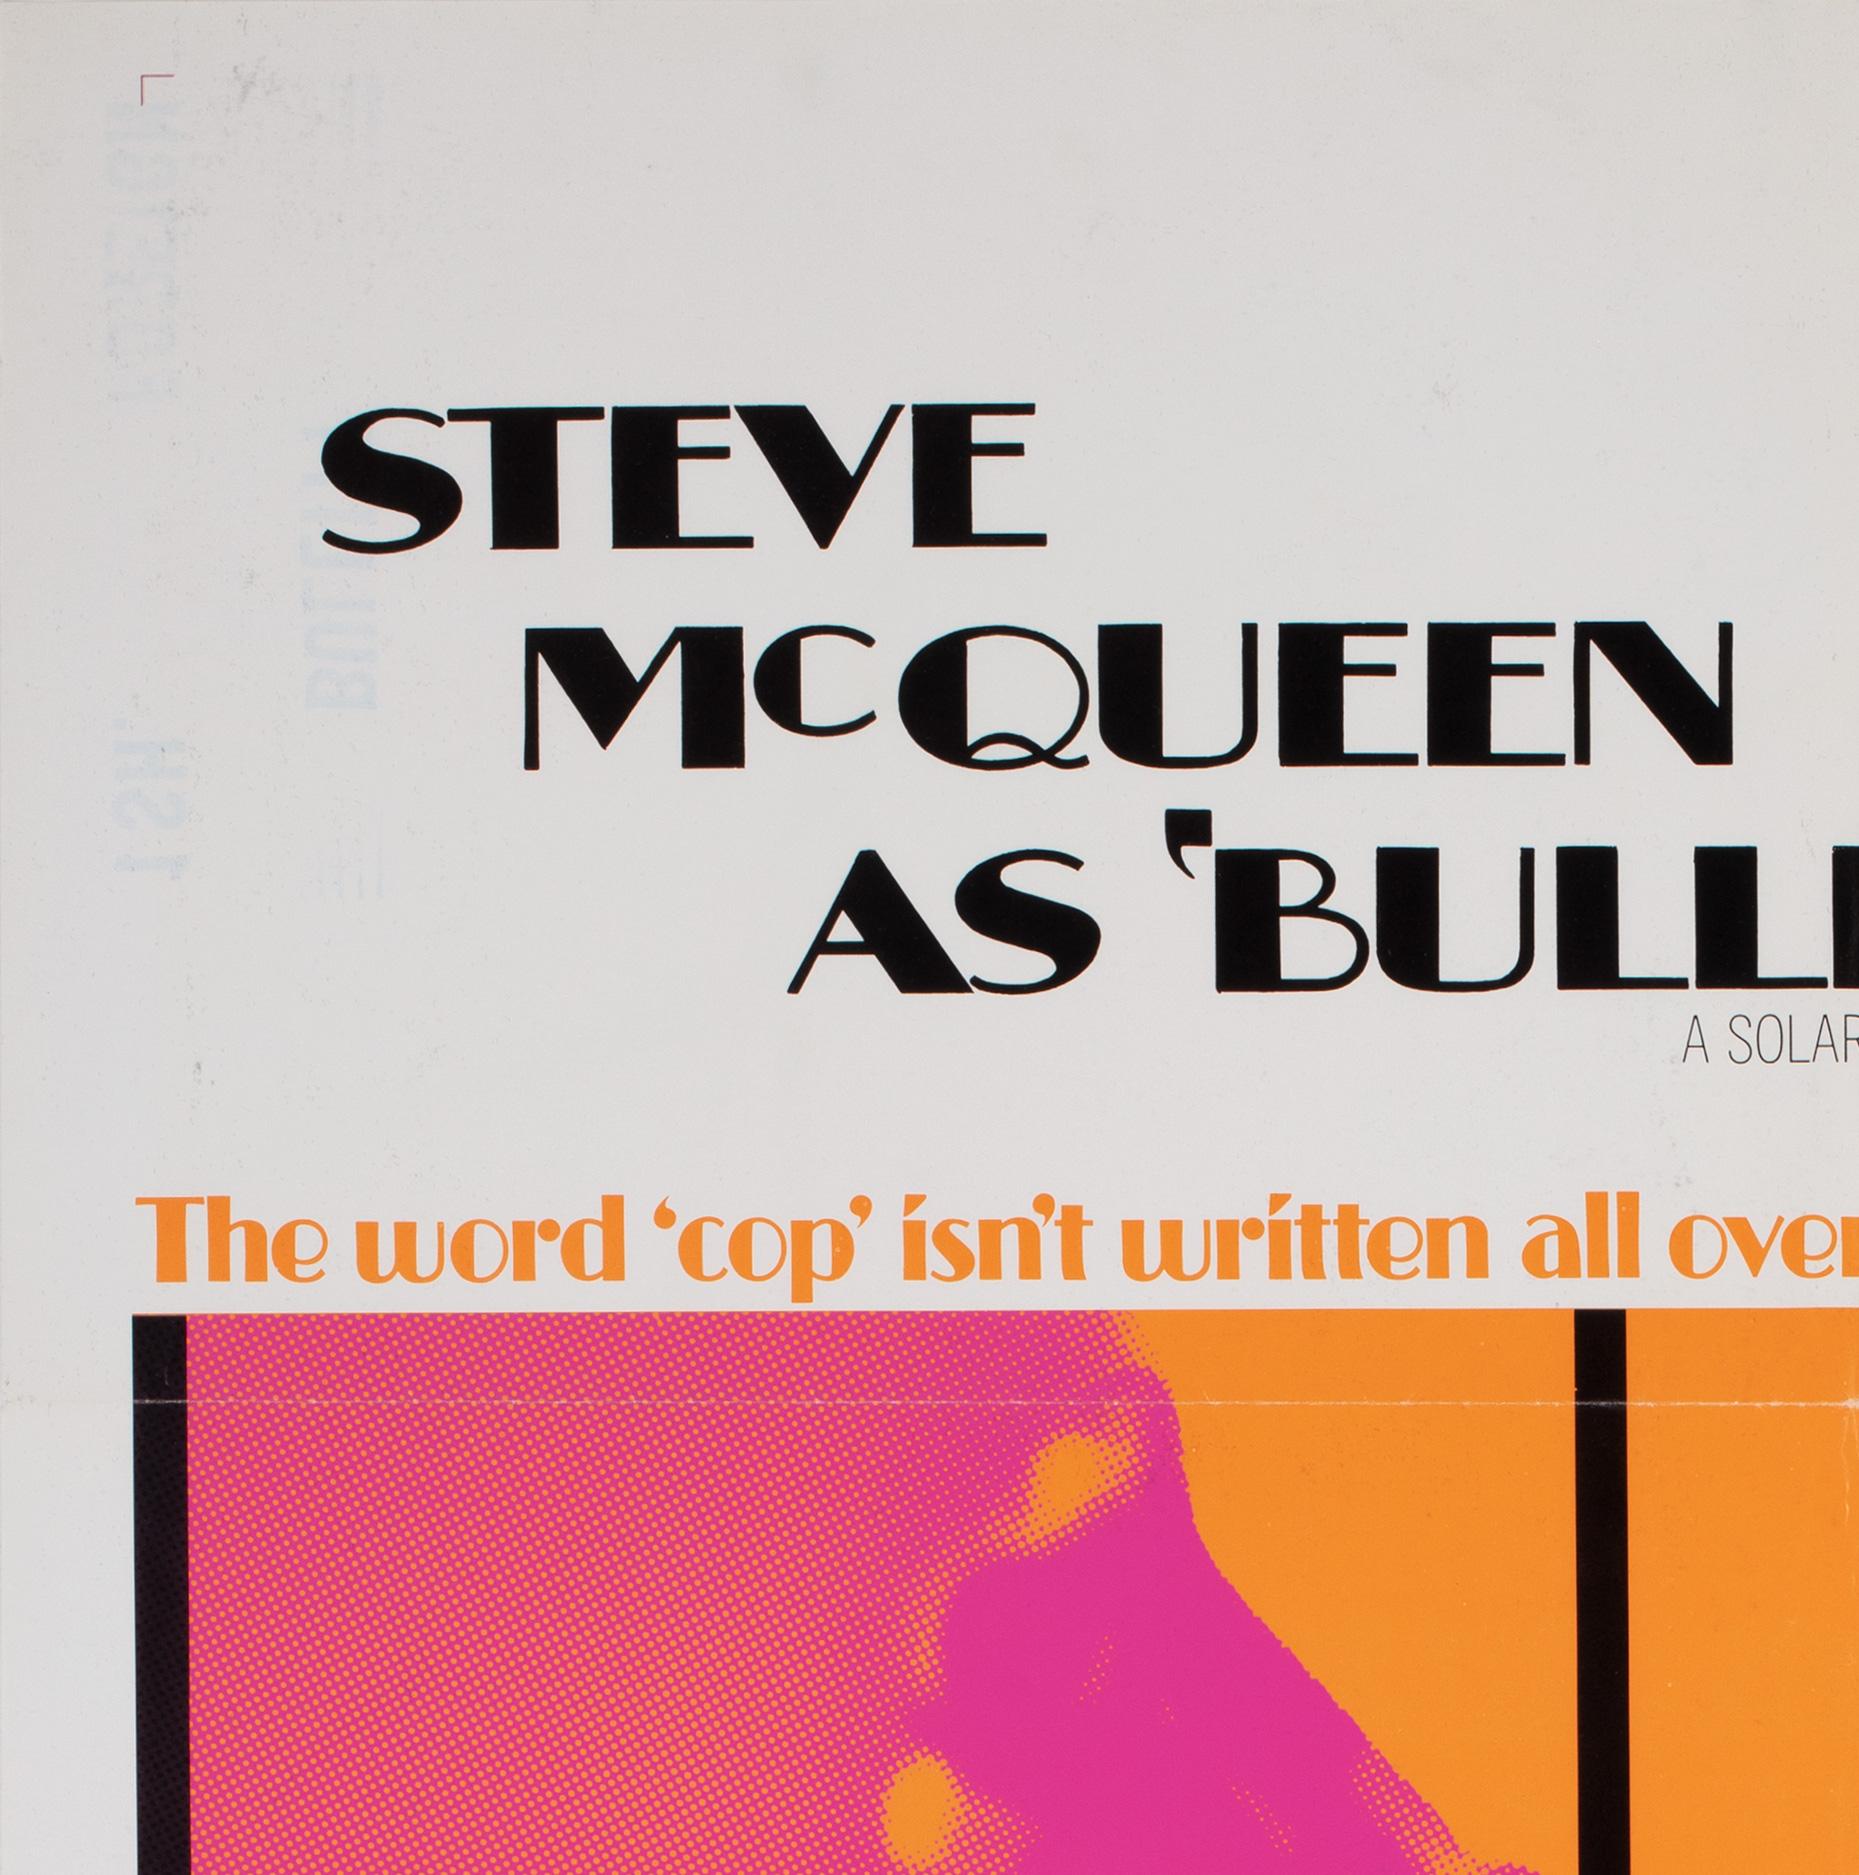 American BULLITT Original US Film Movie Poster, International 1968, Steve McQueen For Sale